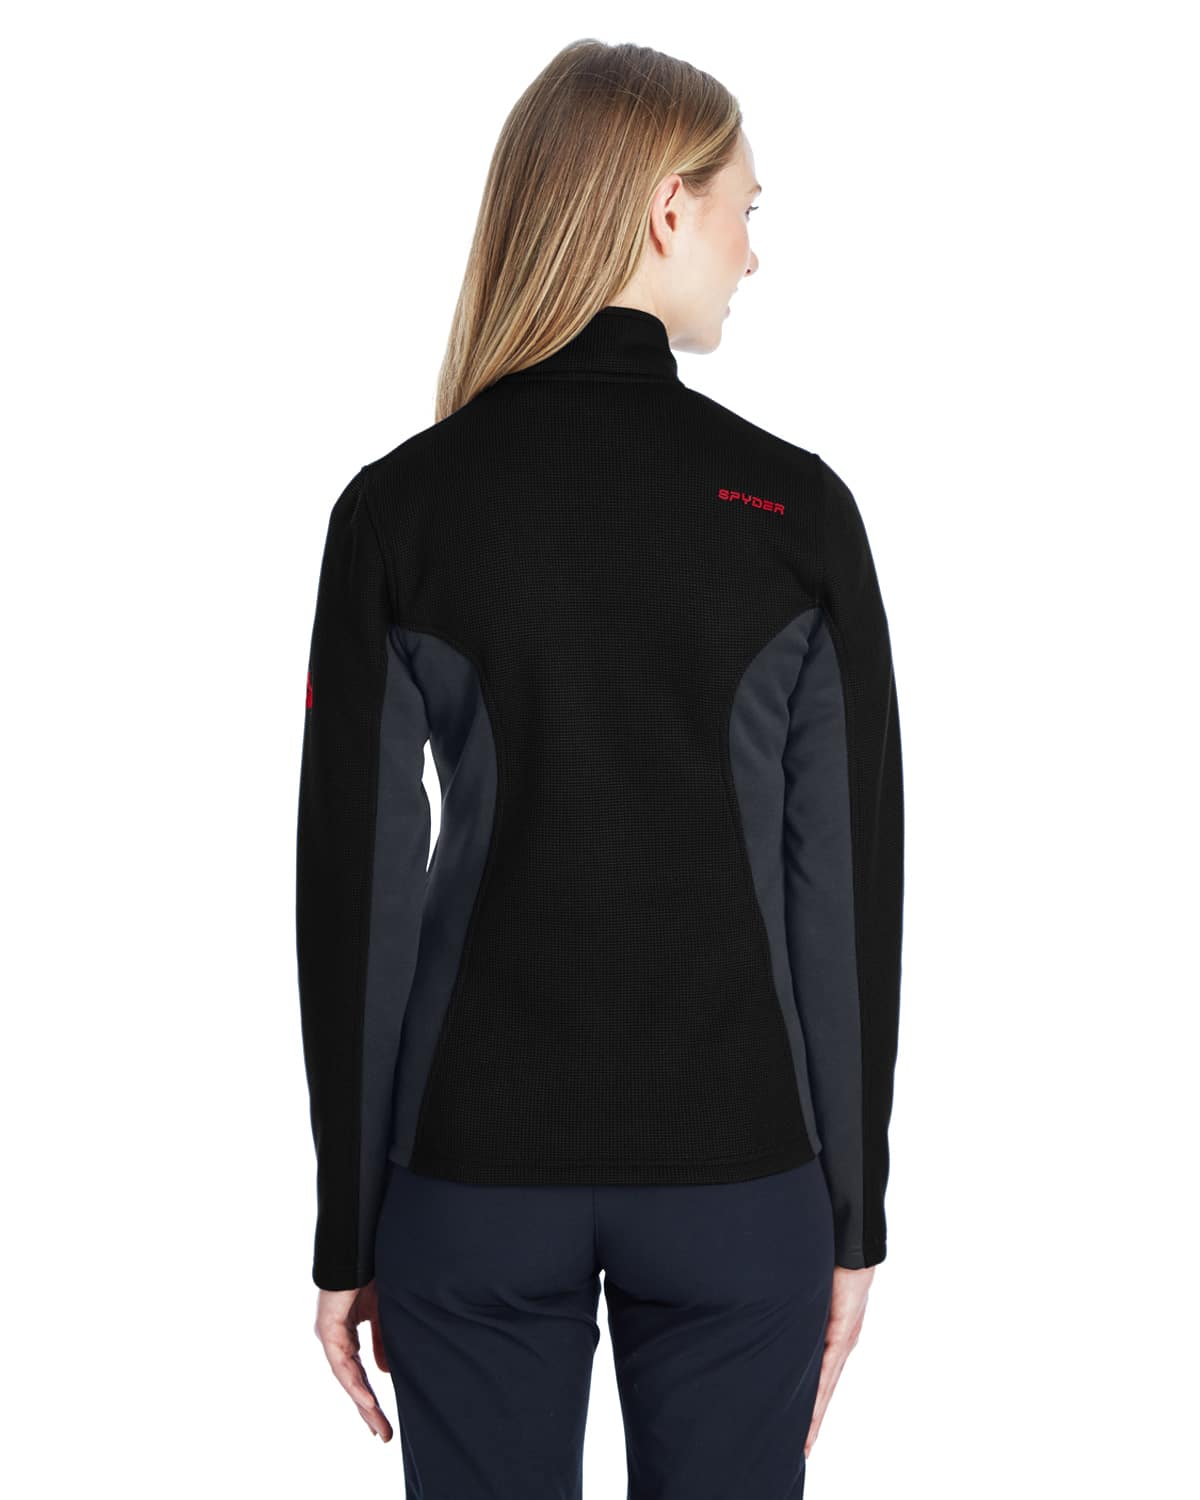 Spyder Ladies' Constant Full-Zip Sweater Fleece Jacket – Nussbaum Company  Store